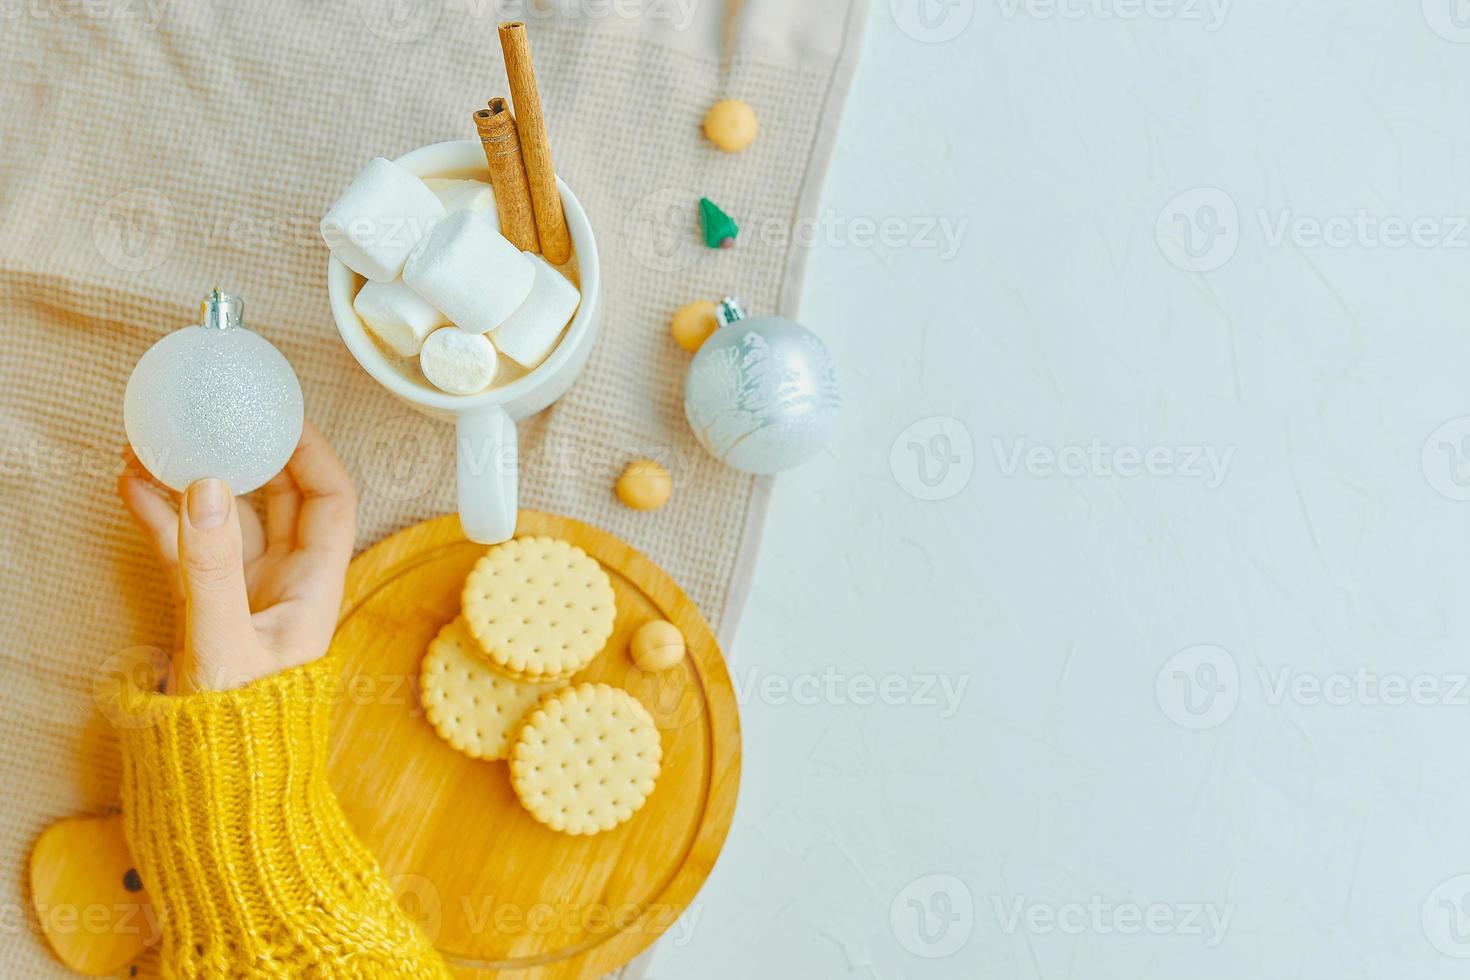 garota segura a bola de Natal, a xícara de chocolate, biscoitos e toalha de mesa em cima da mesa. foto